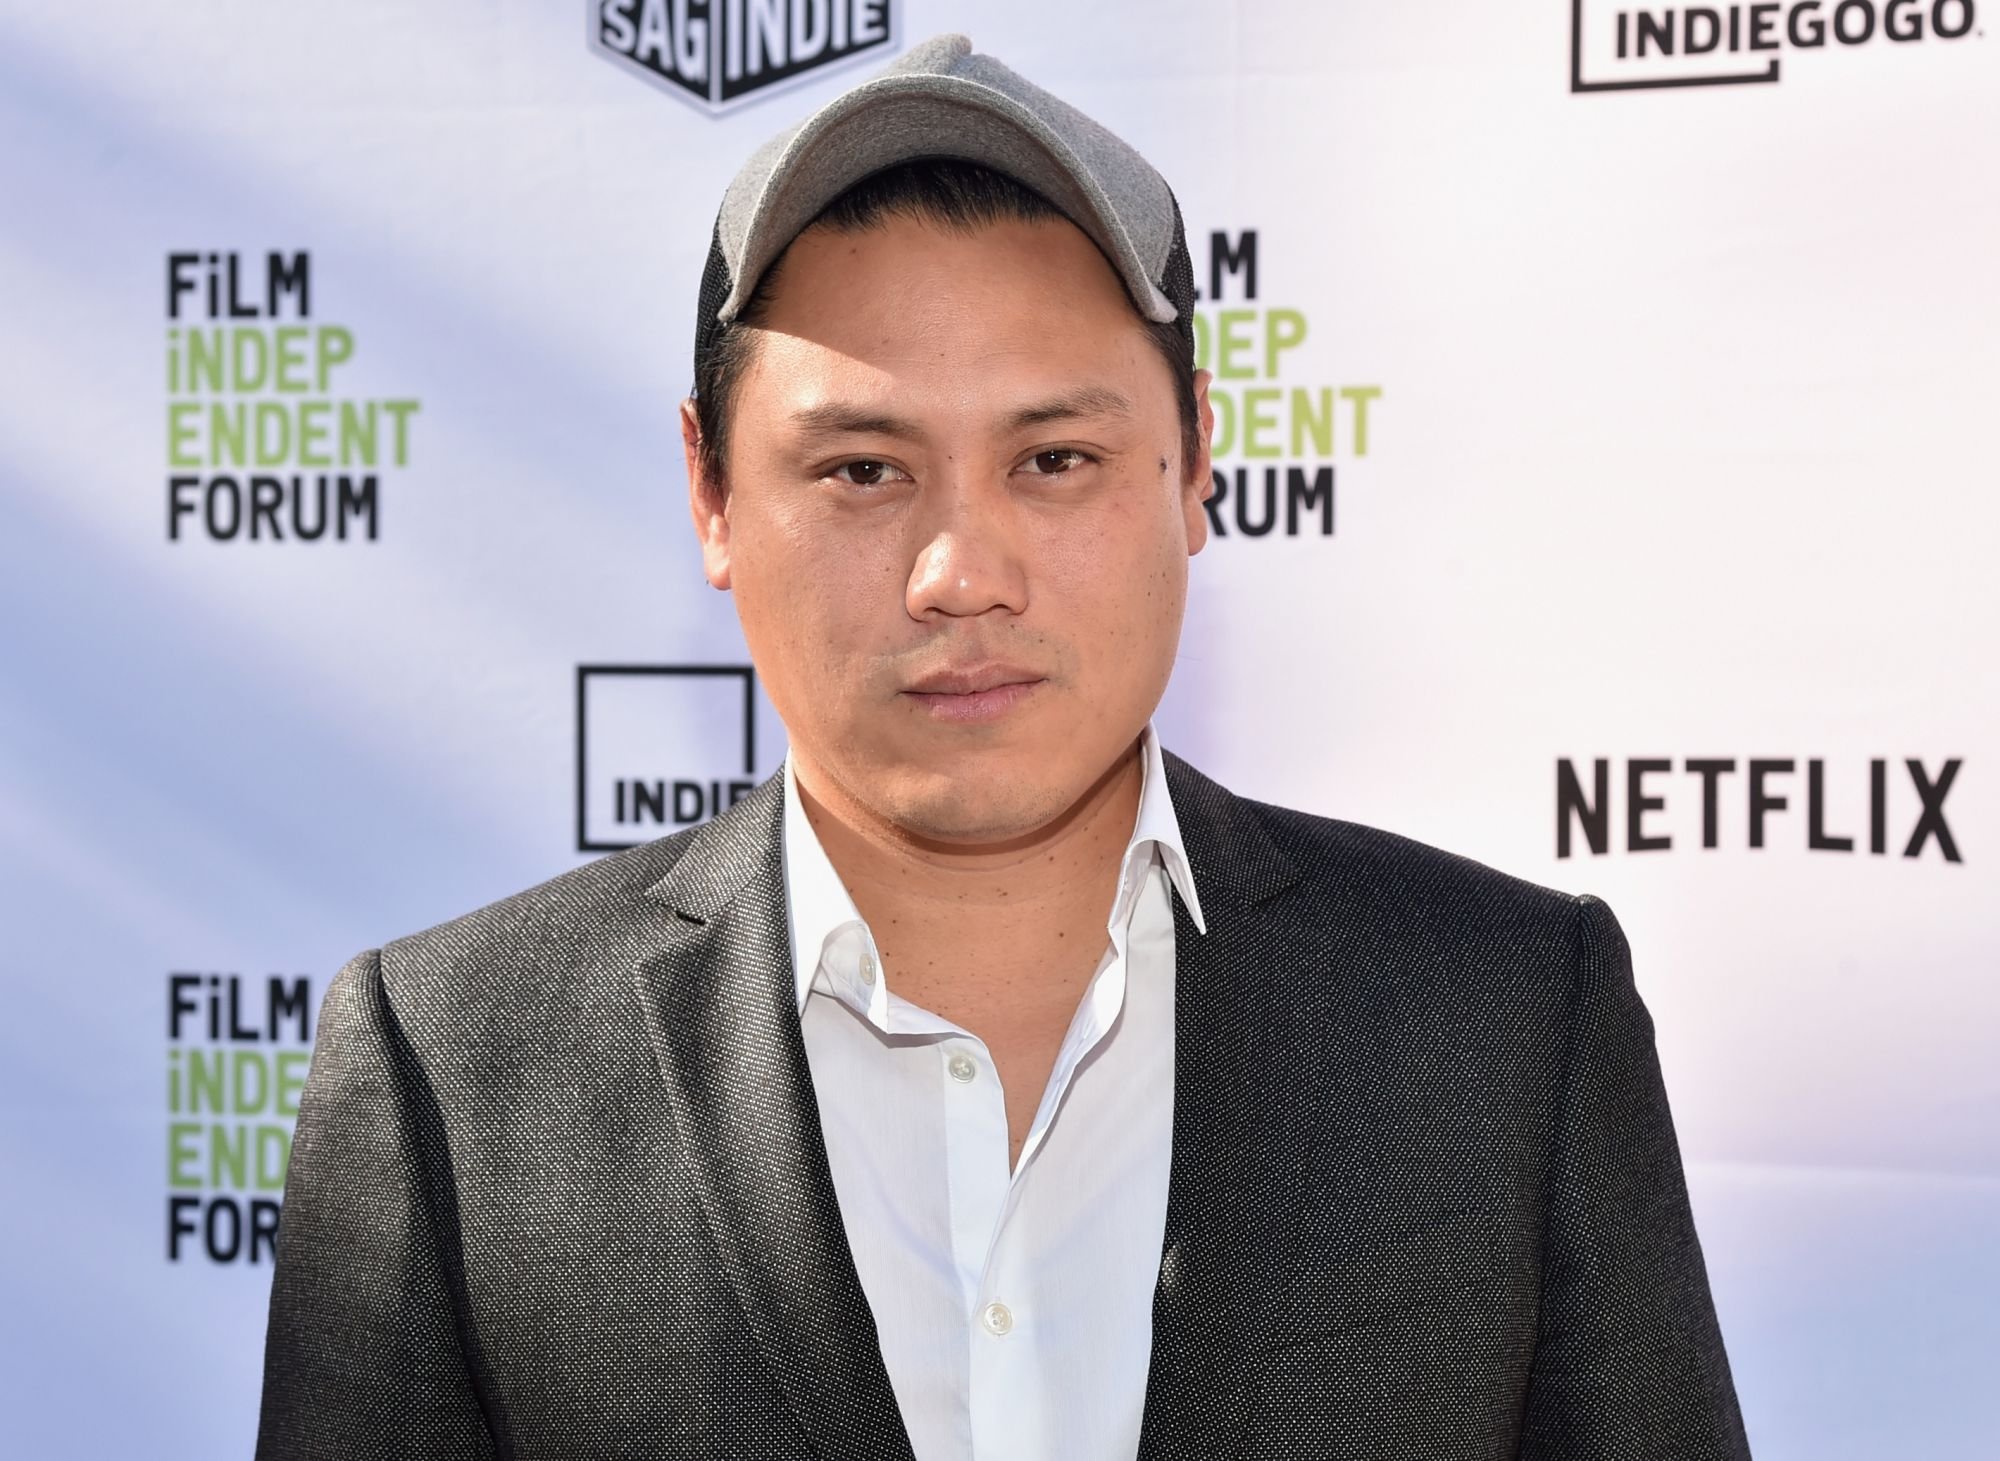 Jon M. Chu sur le tapis rouge de l'Annual Film Independent Forum en octobre 2015 à Los Angeles